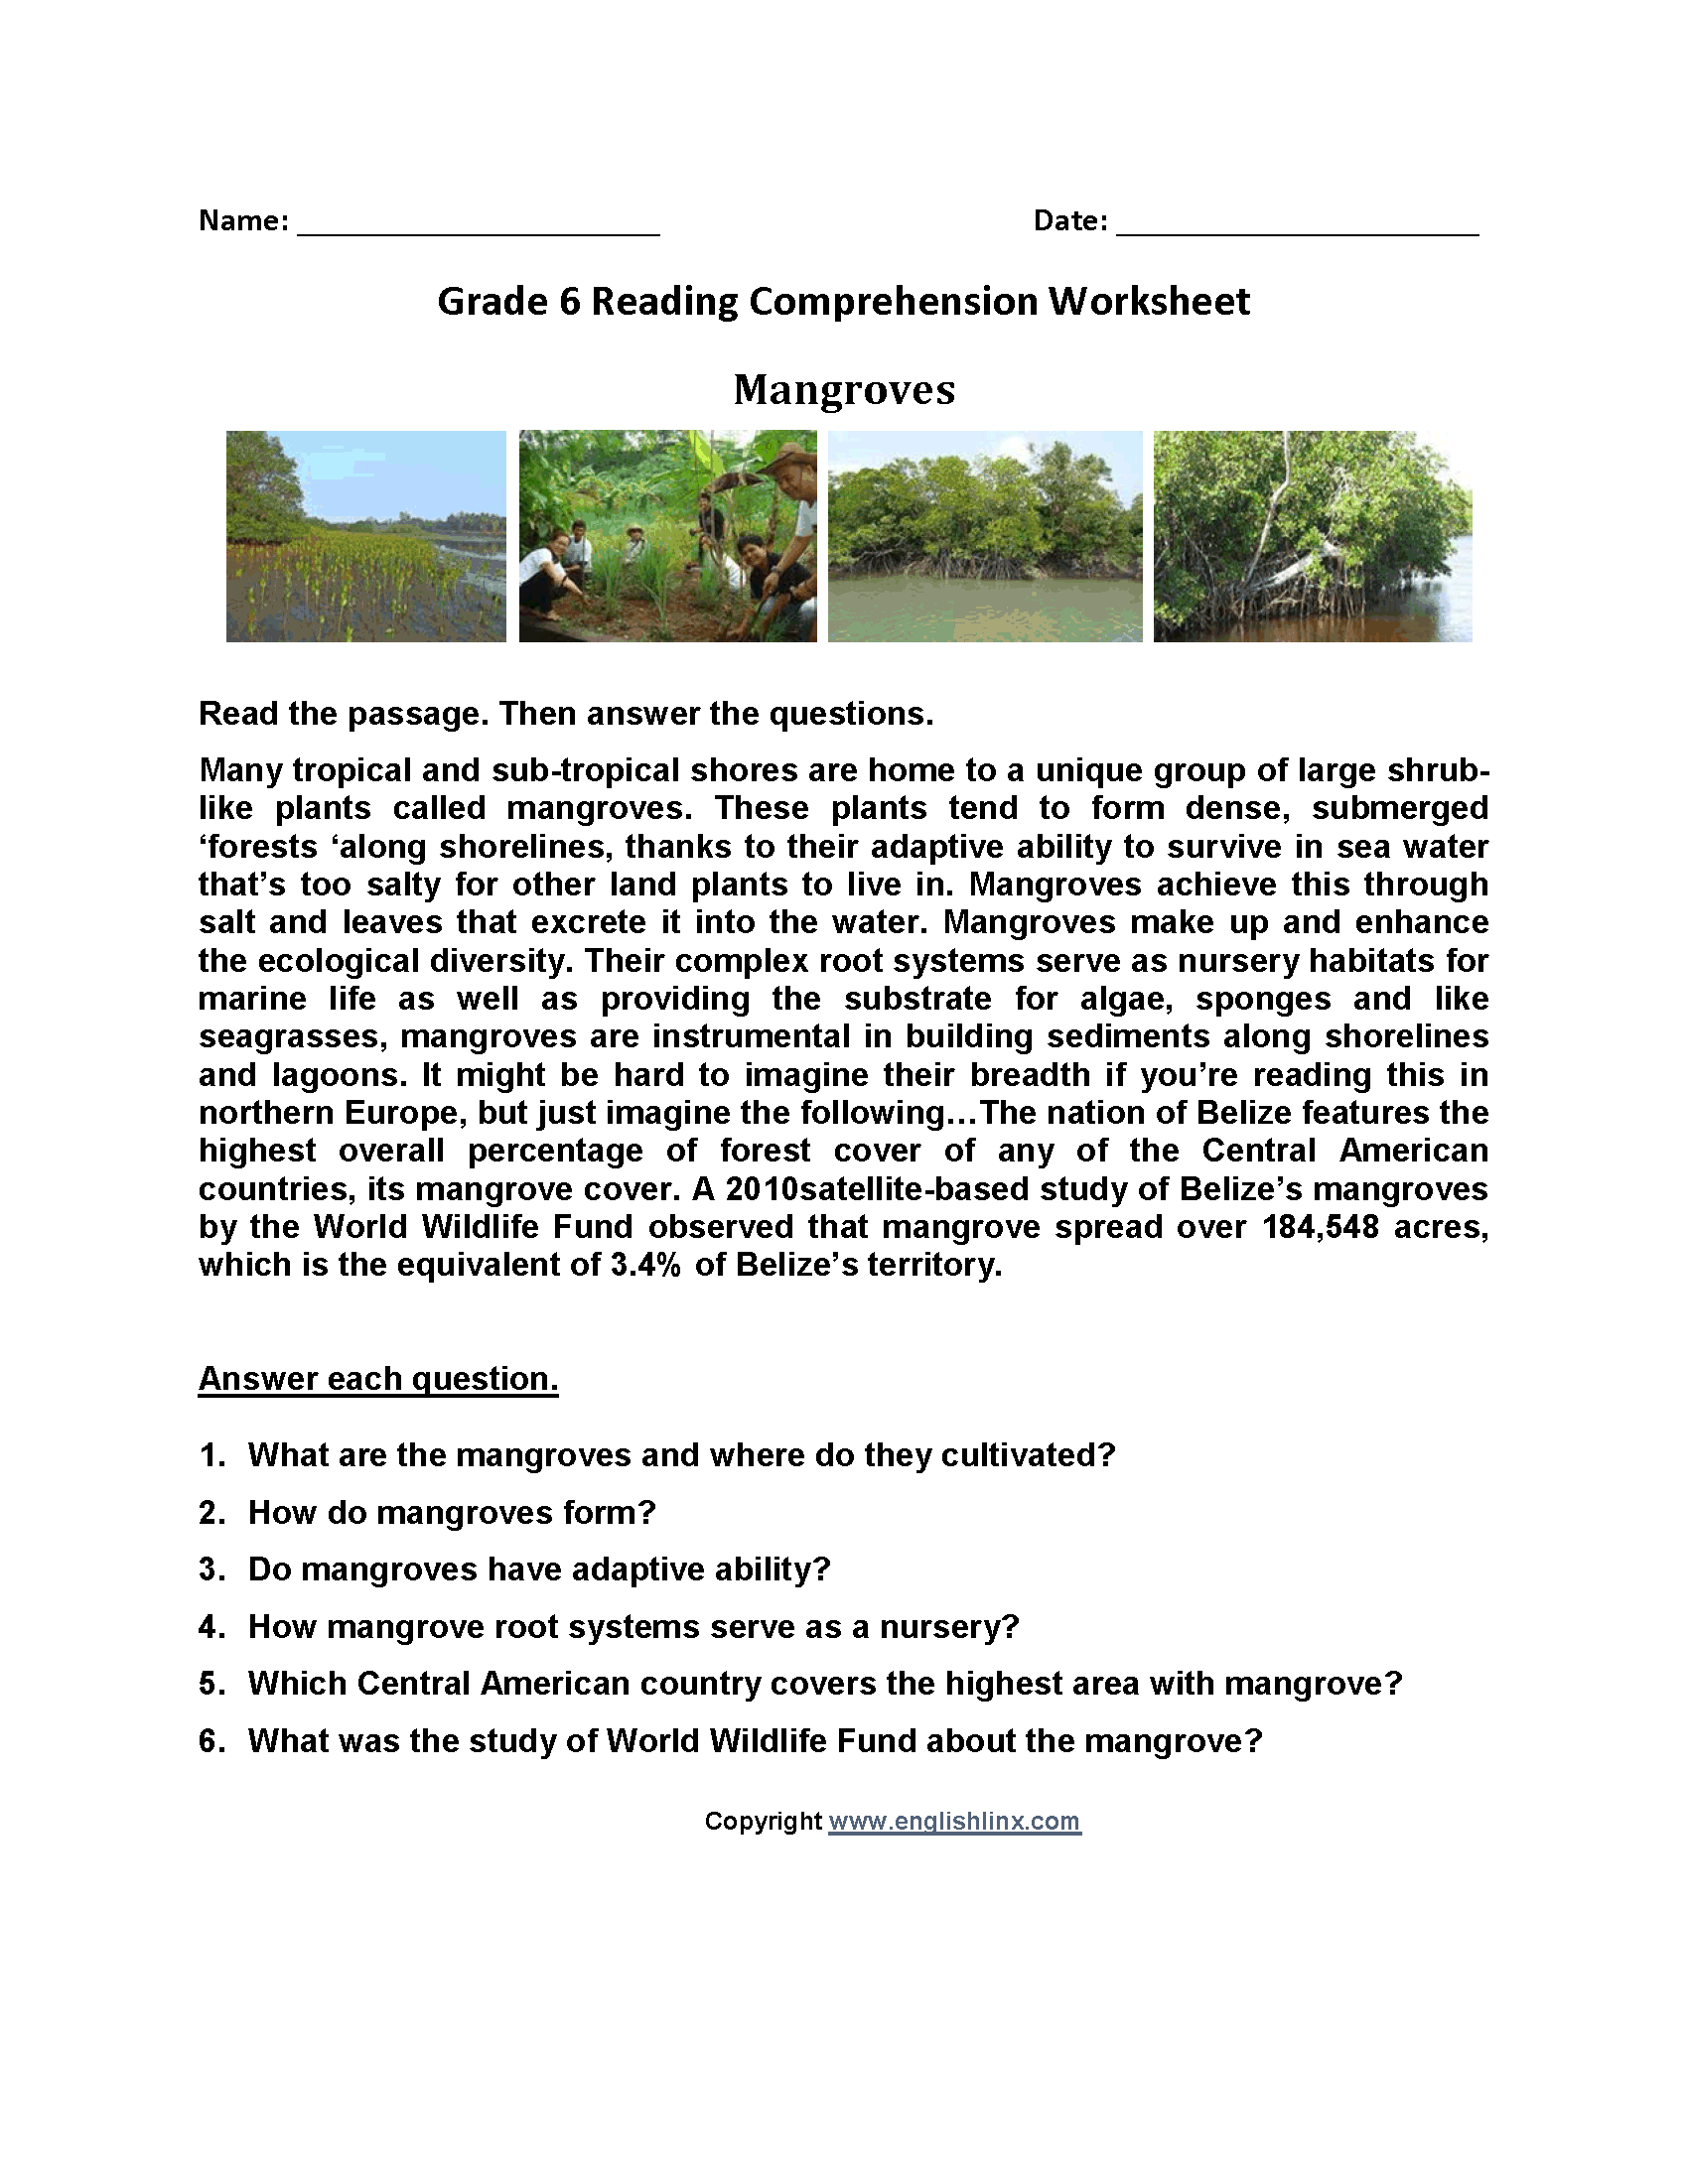 Mangroves Sixth Grade Reading Worksheets